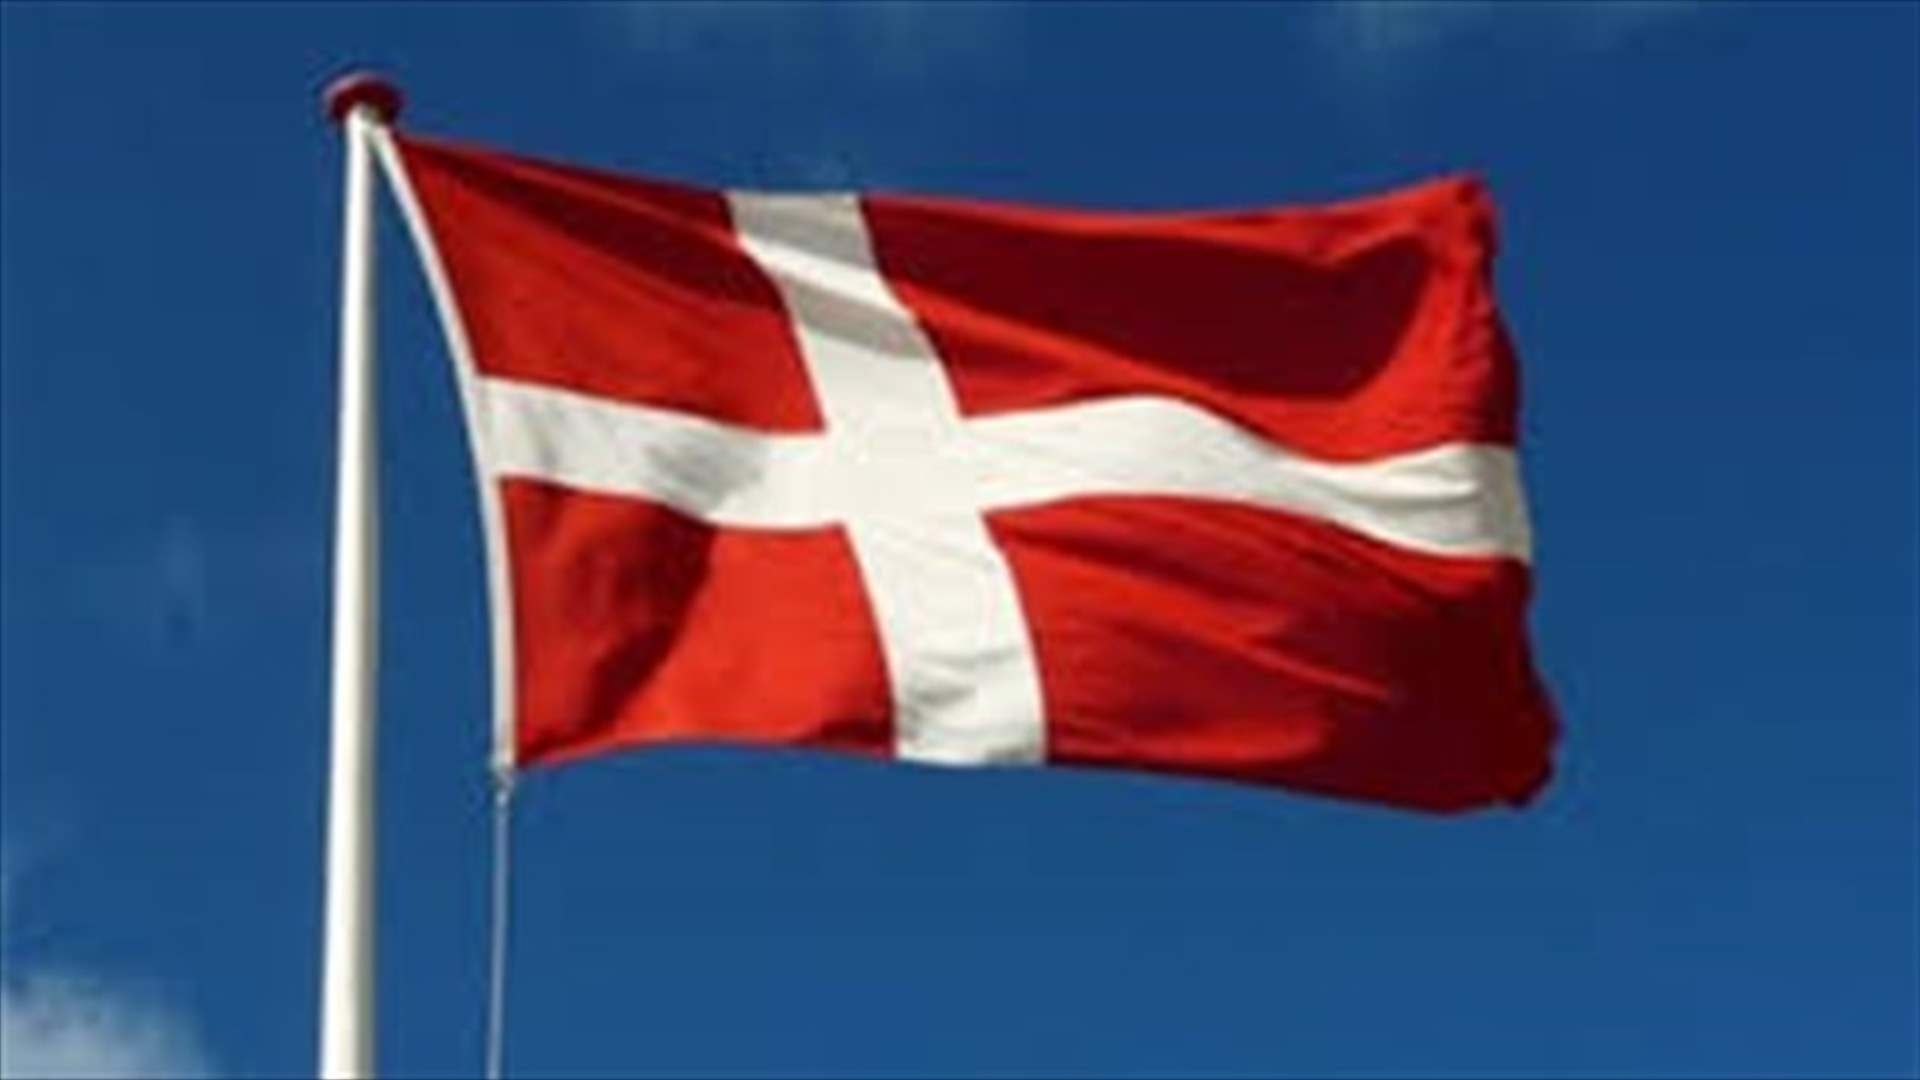 سويسرا تبرم معاهدة لتبادل البيانات مع أميركا تتماشى مع اتفاق أوروبي